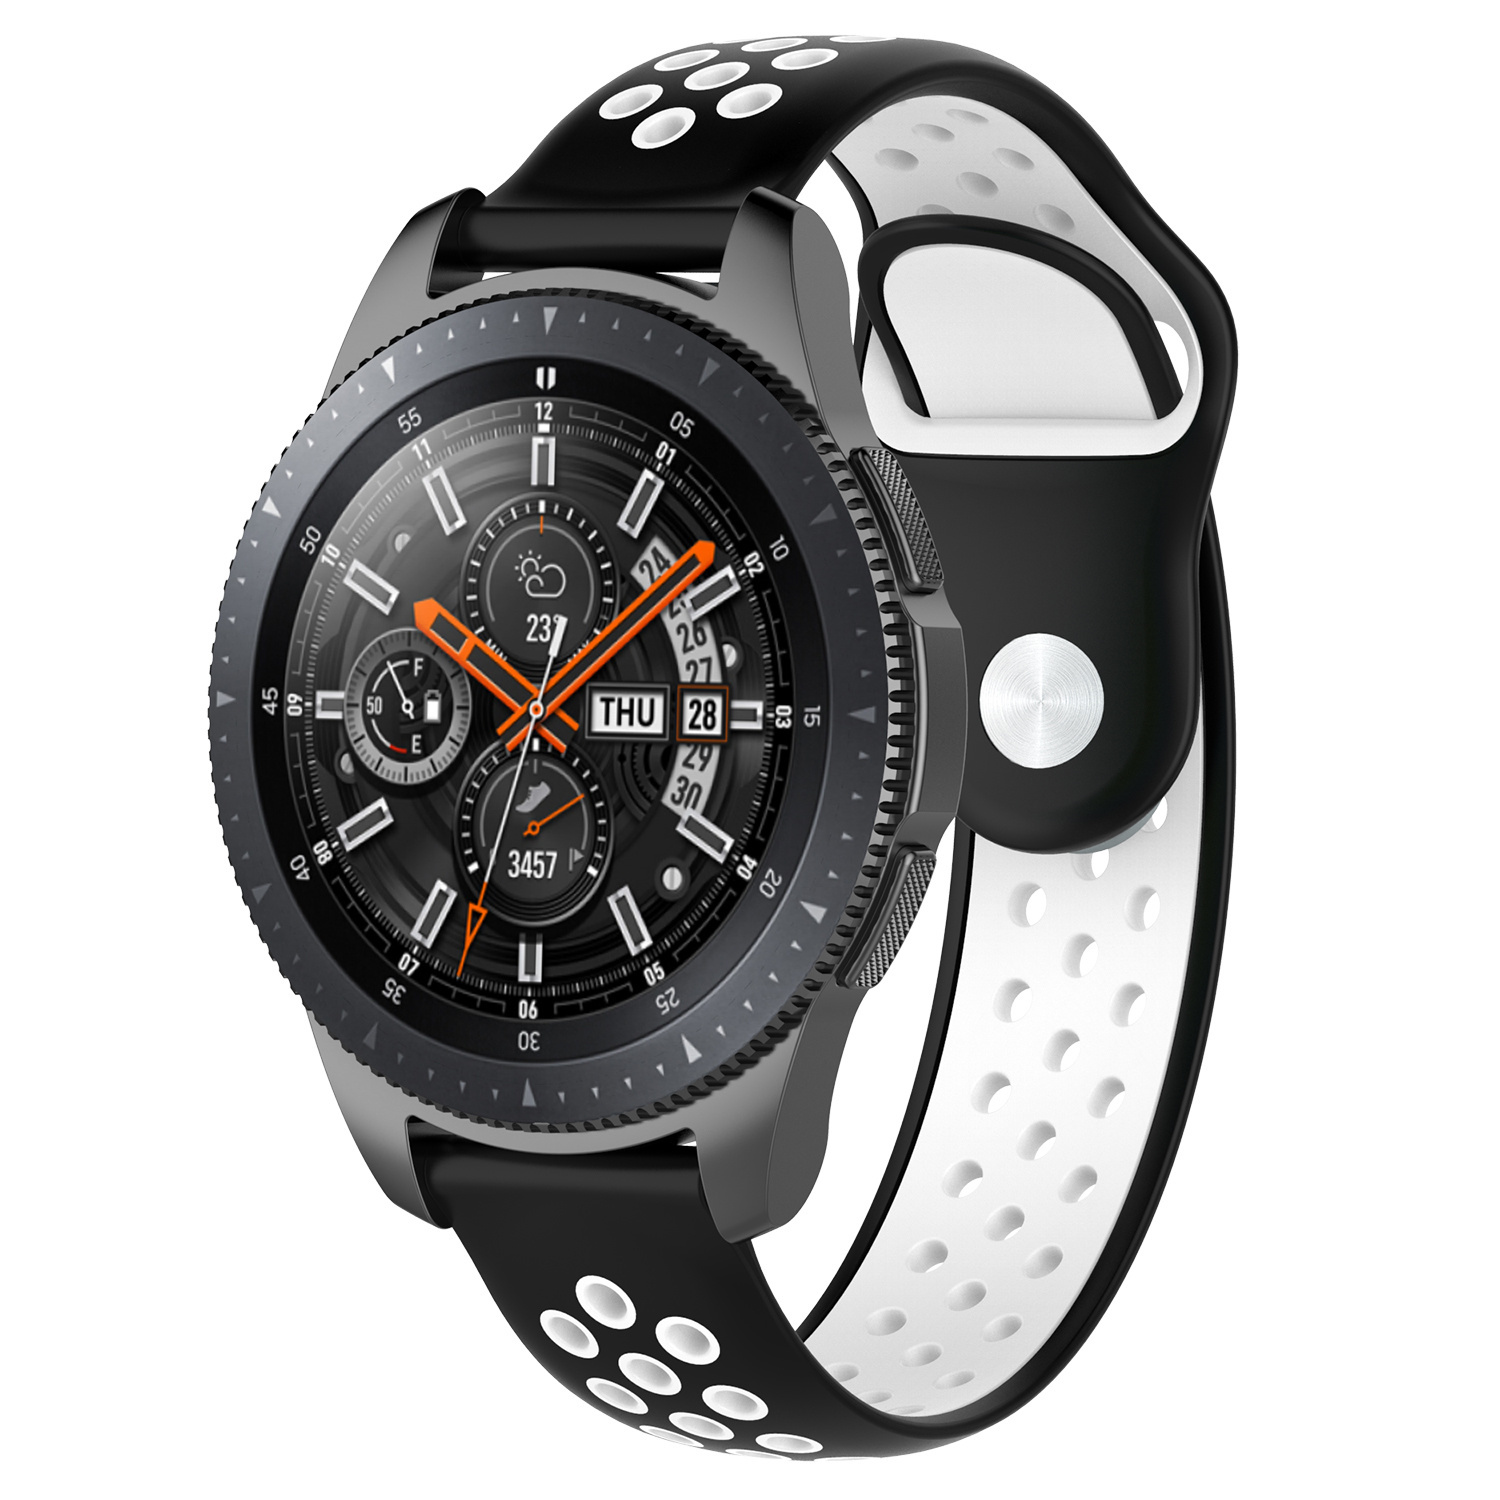 Correa deportiva doble para el Samsung Galaxy Watch - negro blanco